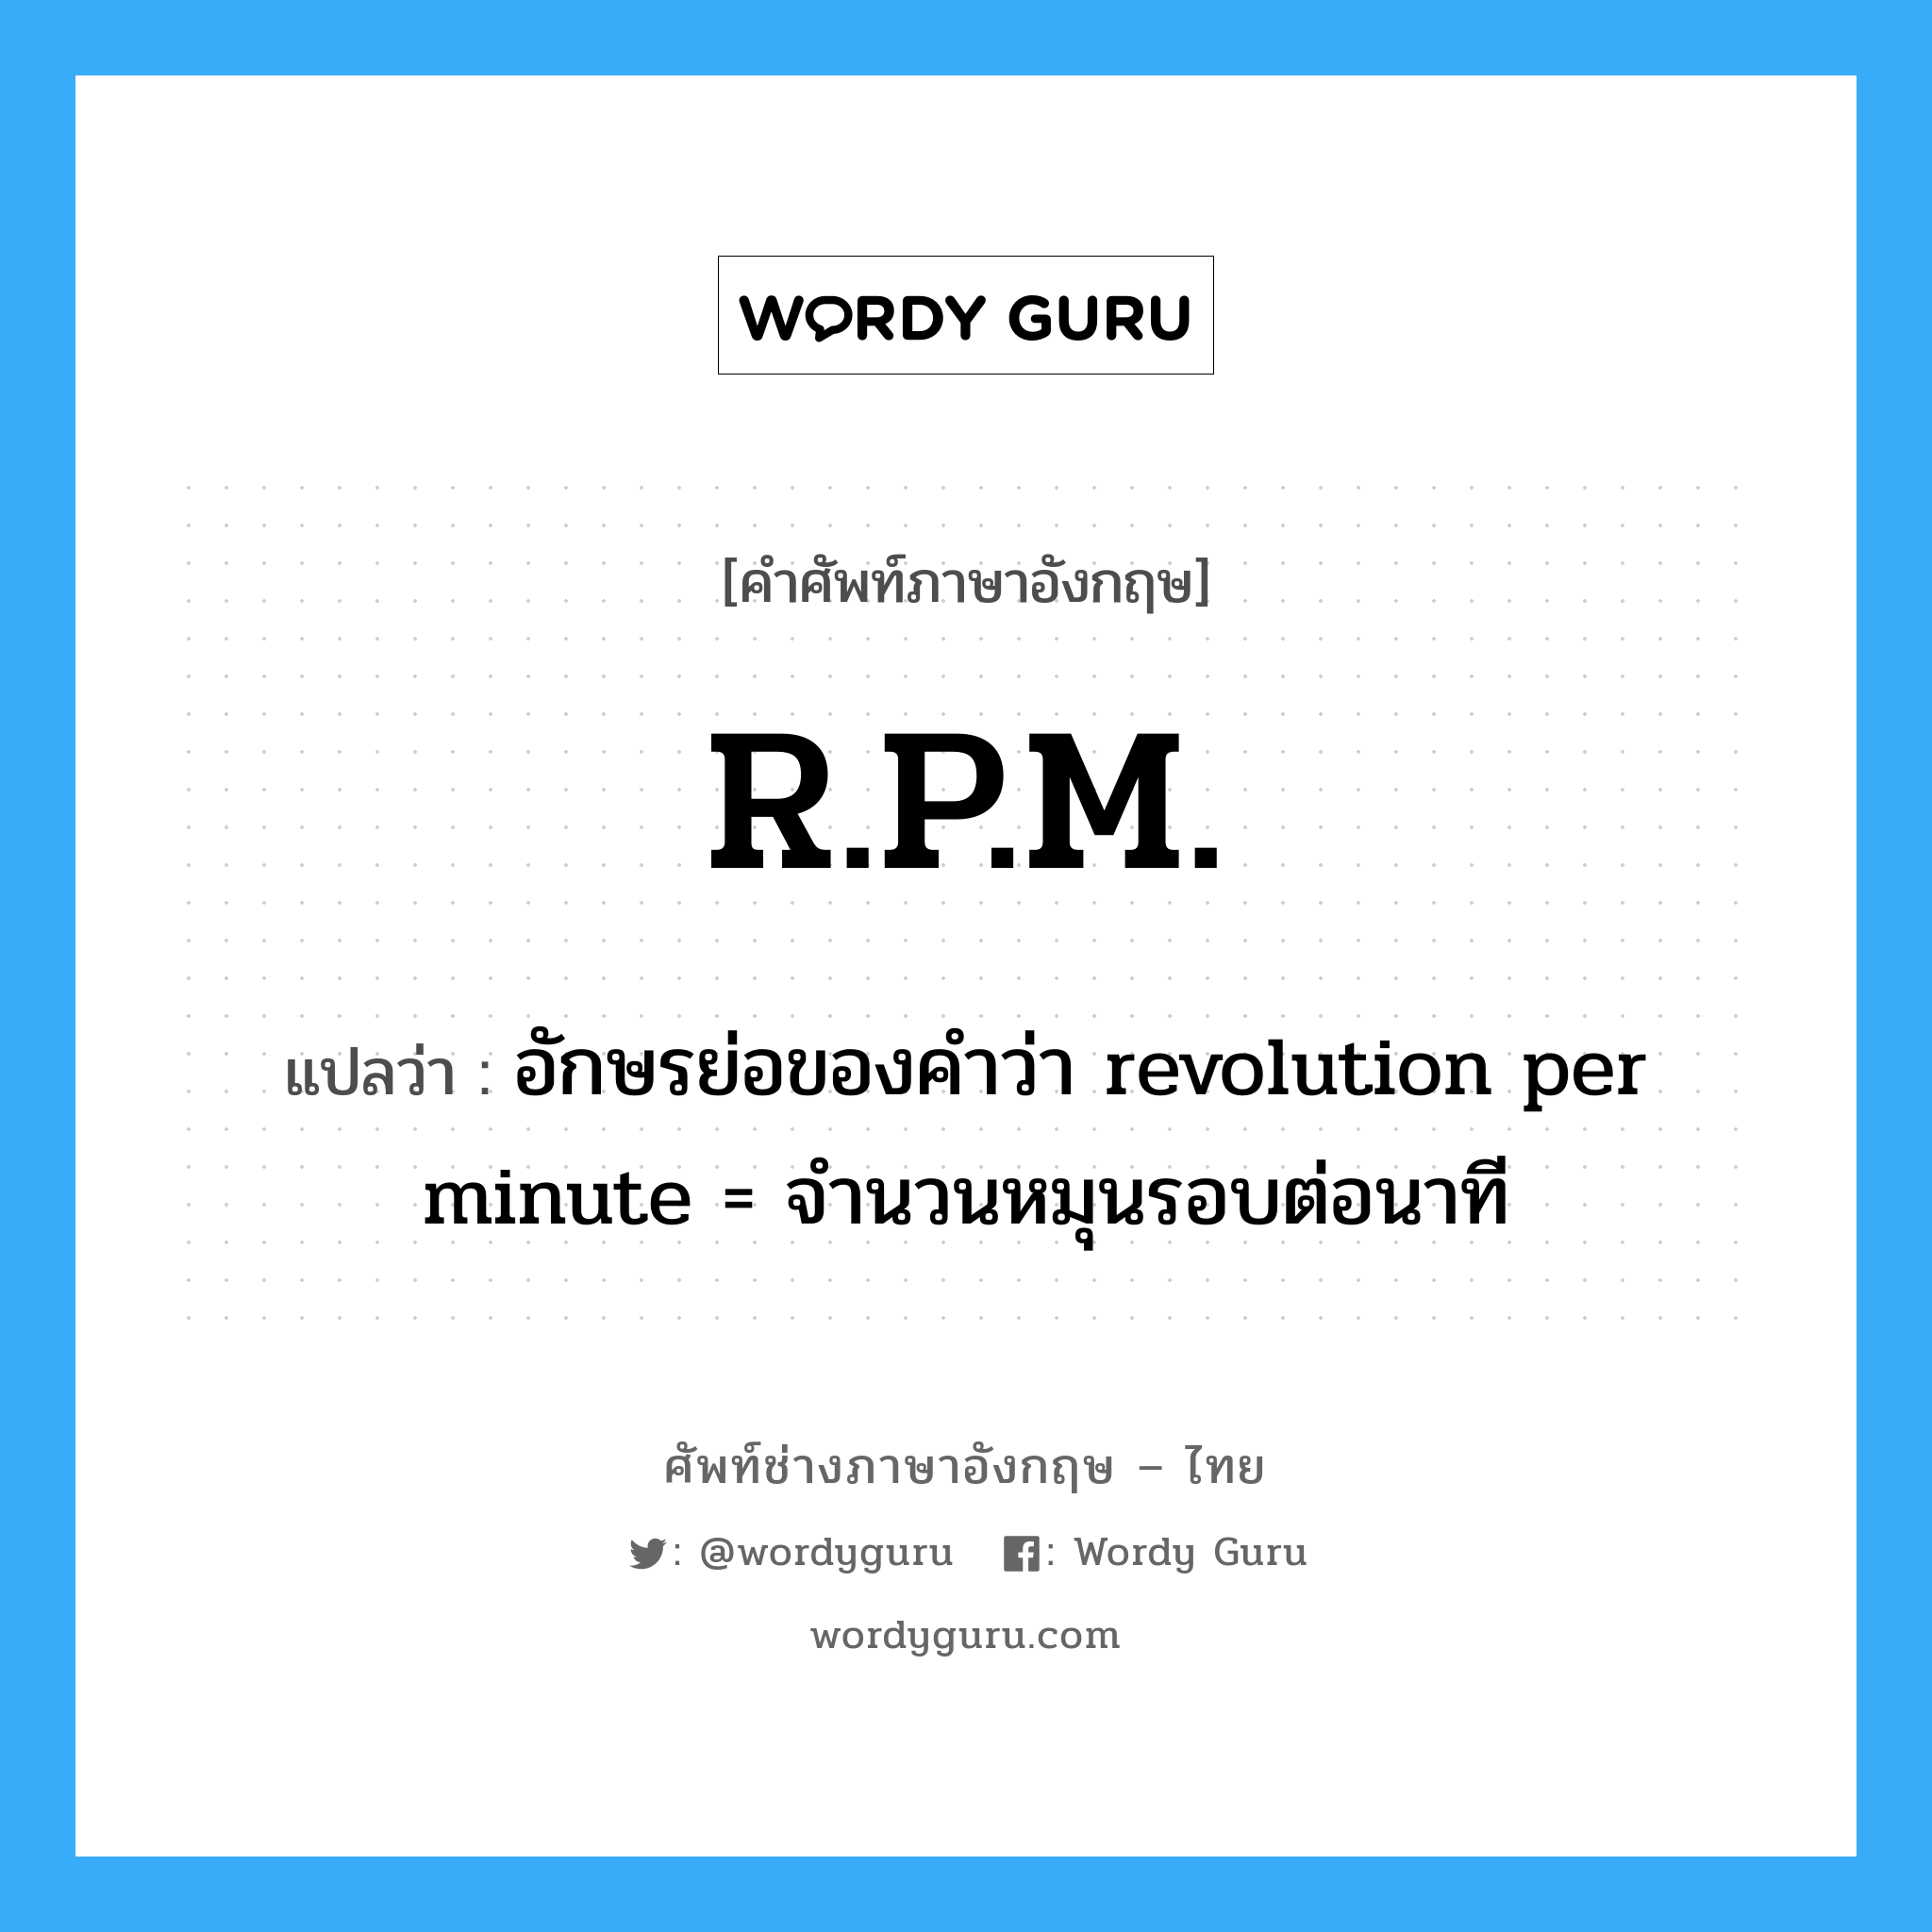 อักษรย่อของคำว่า revolution per minute = จำนวนหมุนรอบต่อนาที ภาษาอังกฤษ?, คำศัพท์ช่างภาษาอังกฤษ - ไทย อักษรย่อของคำว่า revolution per minute = จำนวนหมุนรอบต่อนาที คำศัพท์ภาษาอังกฤษ อักษรย่อของคำว่า revolution per minute = จำนวนหมุนรอบต่อนาที แปลว่า R.P.M.